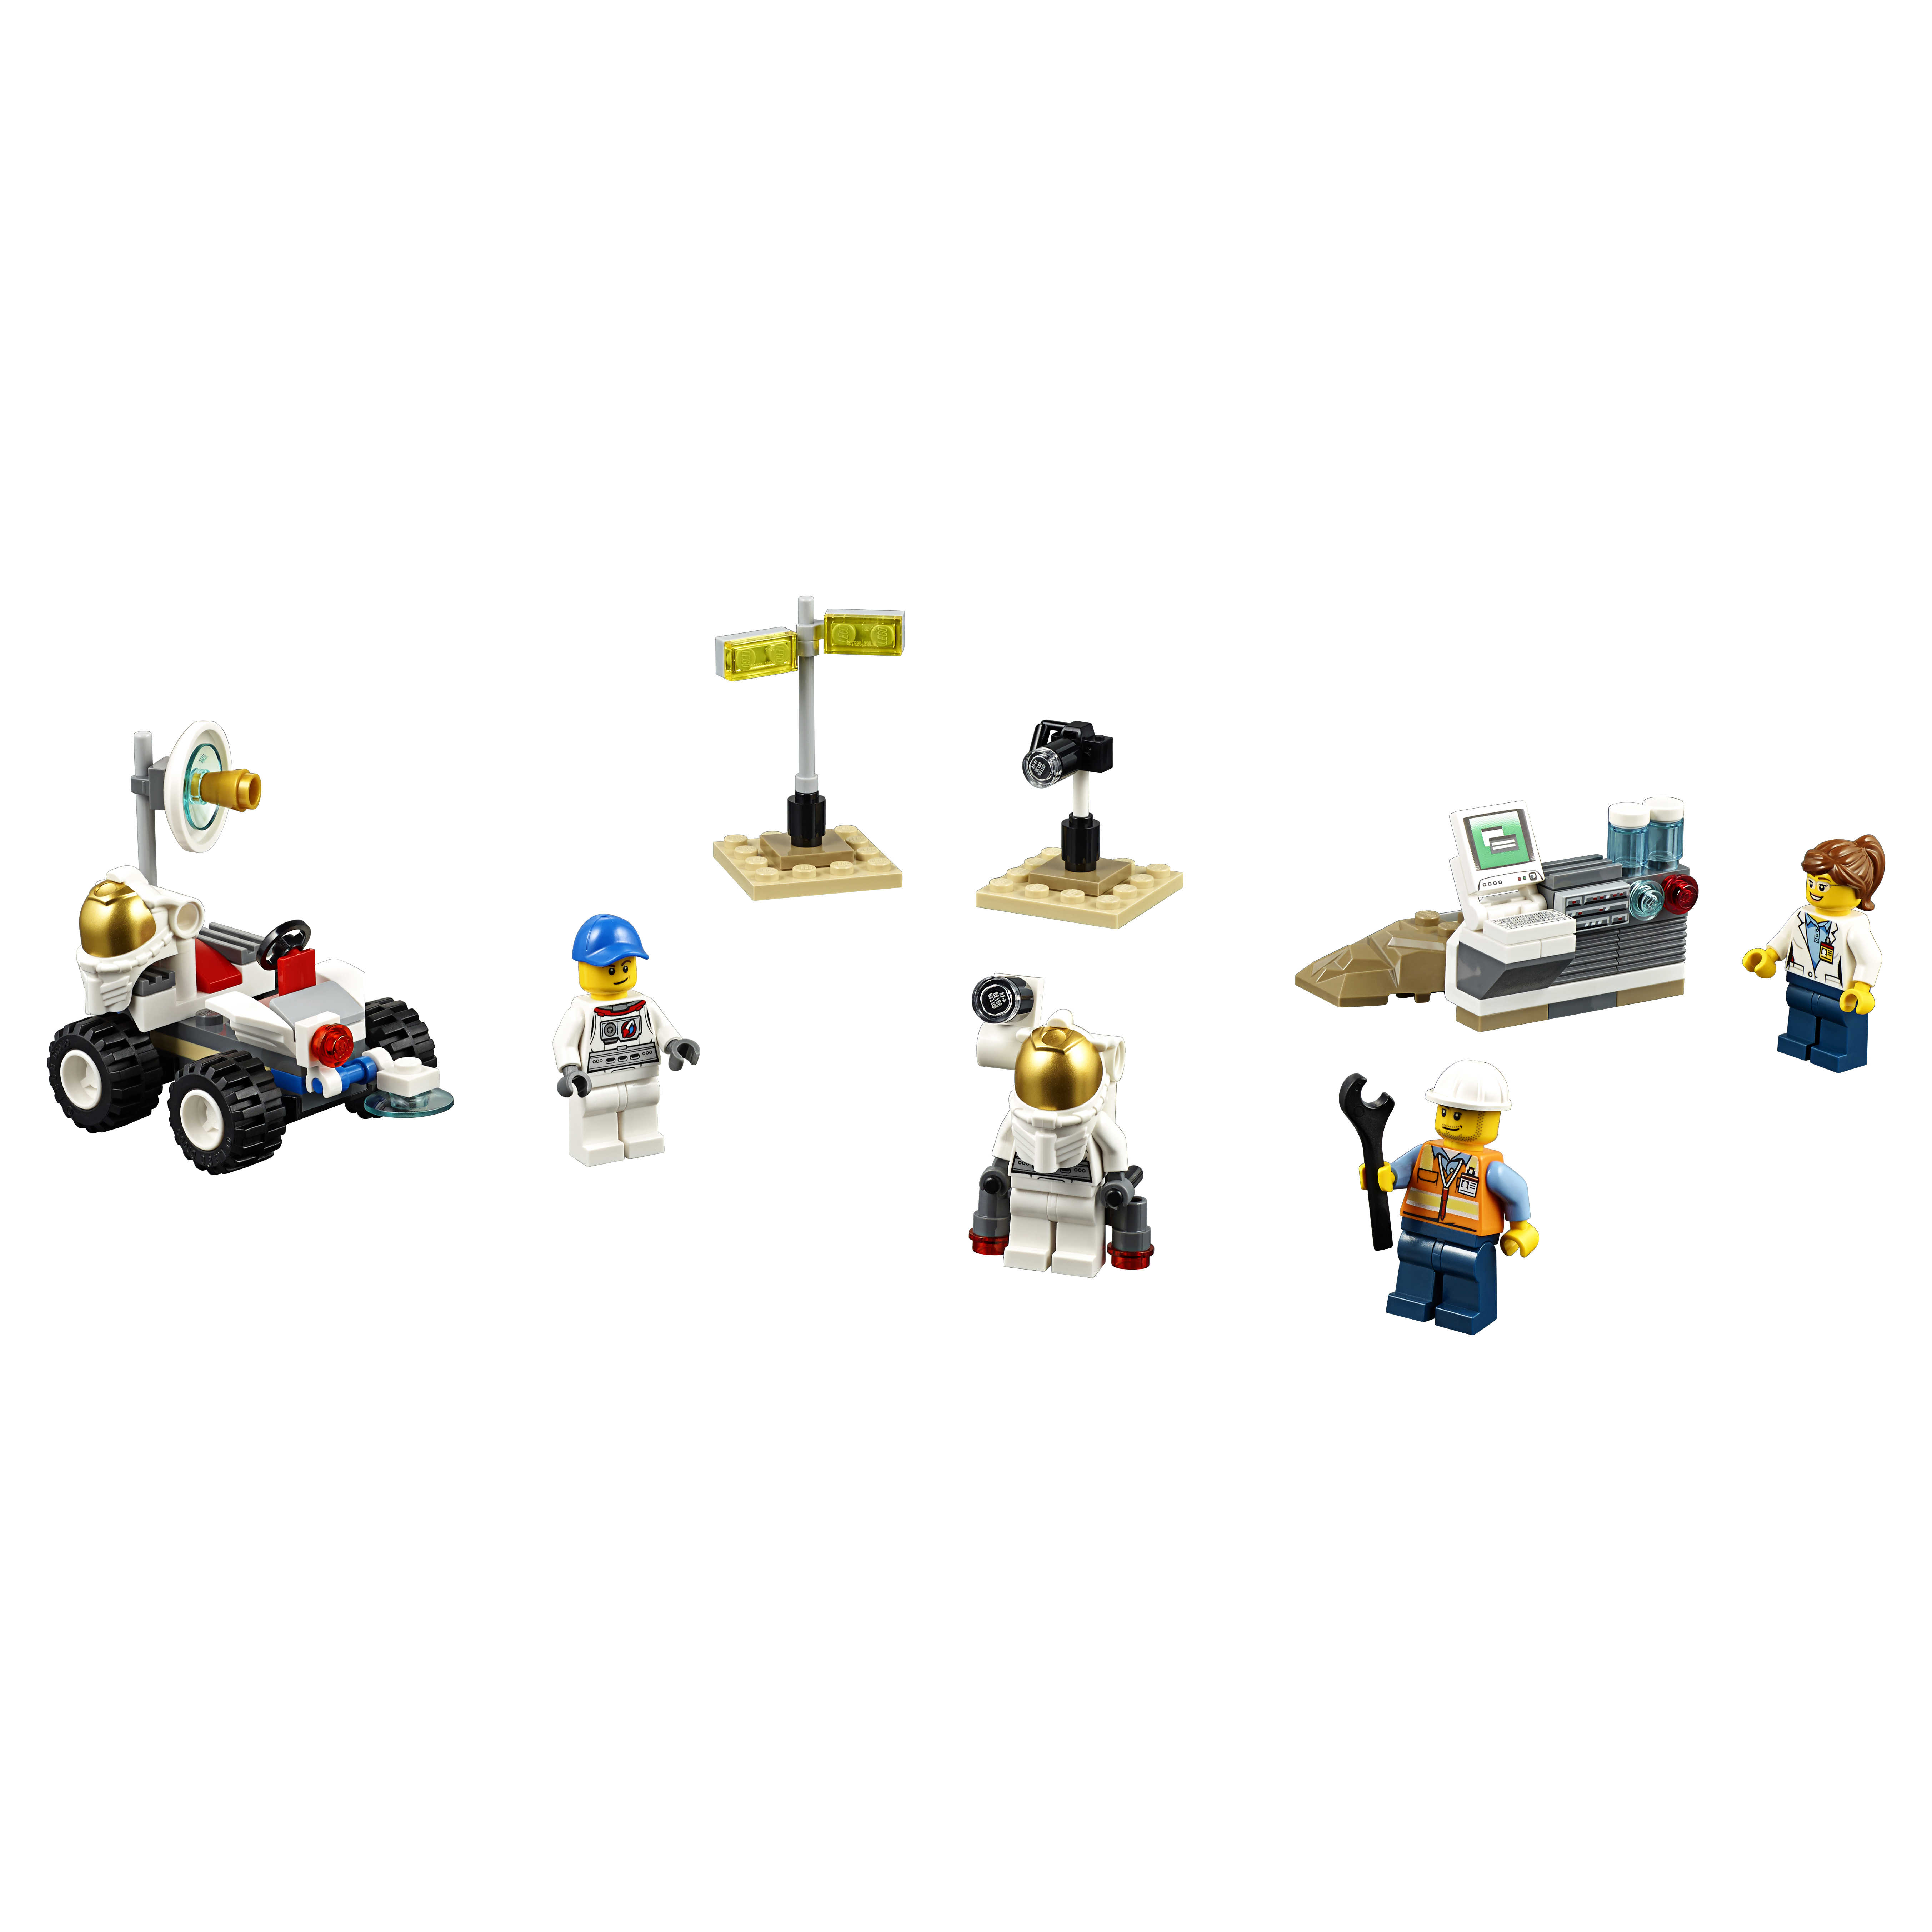 Конструктор LEGO City Space Port Набор для начинающих Космос (60077) конструктор lego пластина 3 x 6 клин срезанные углы белый набор из 50 шт 241901